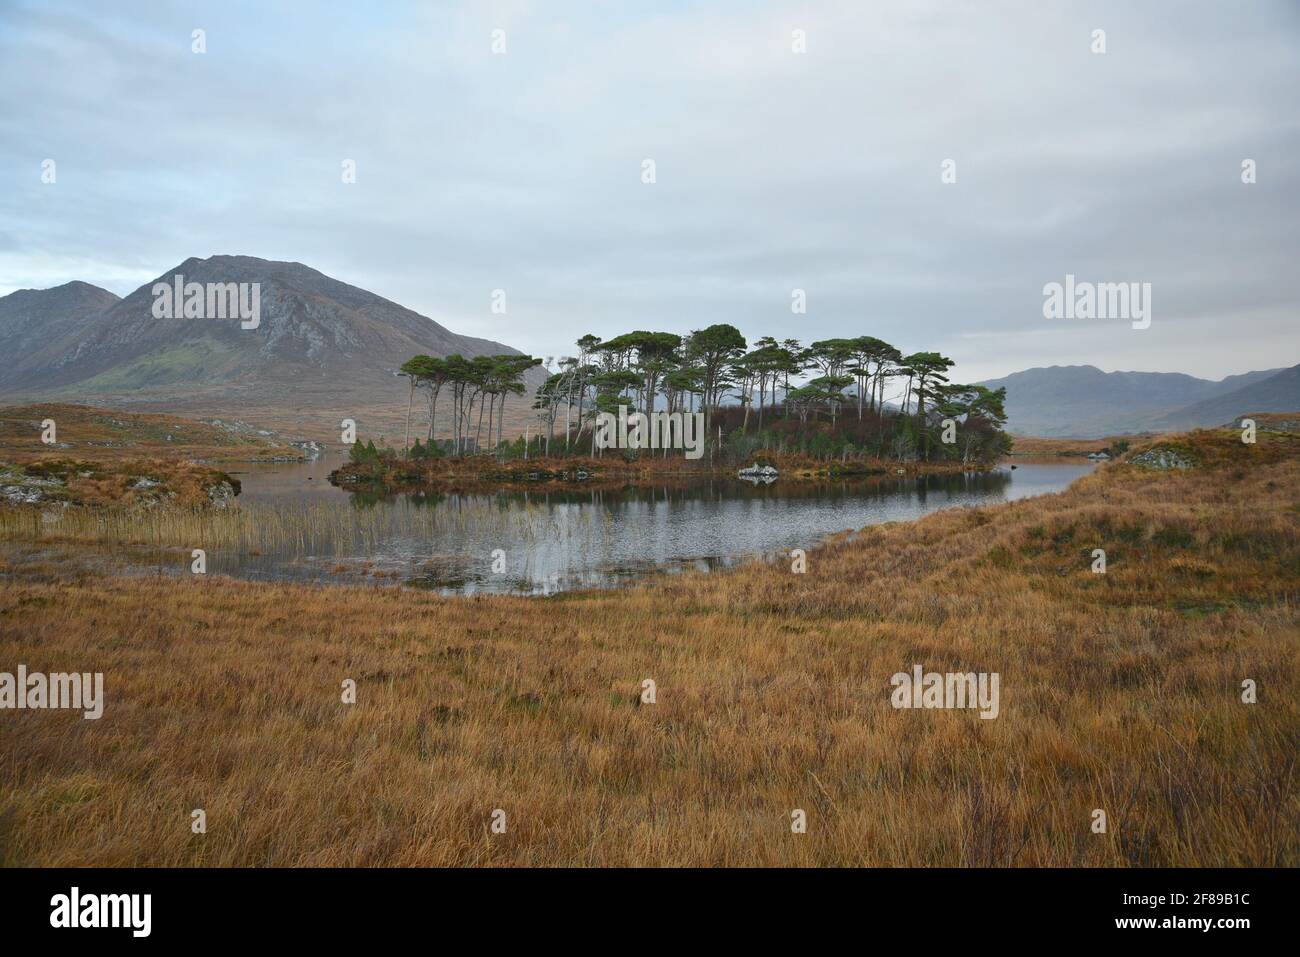 Paysage avec vue panoramique sur Pine Island avec les célèbres pins à feuilles persistantes indigènes dans la campagne du Connemara, comté de Galway Irlande. Banque D'Images